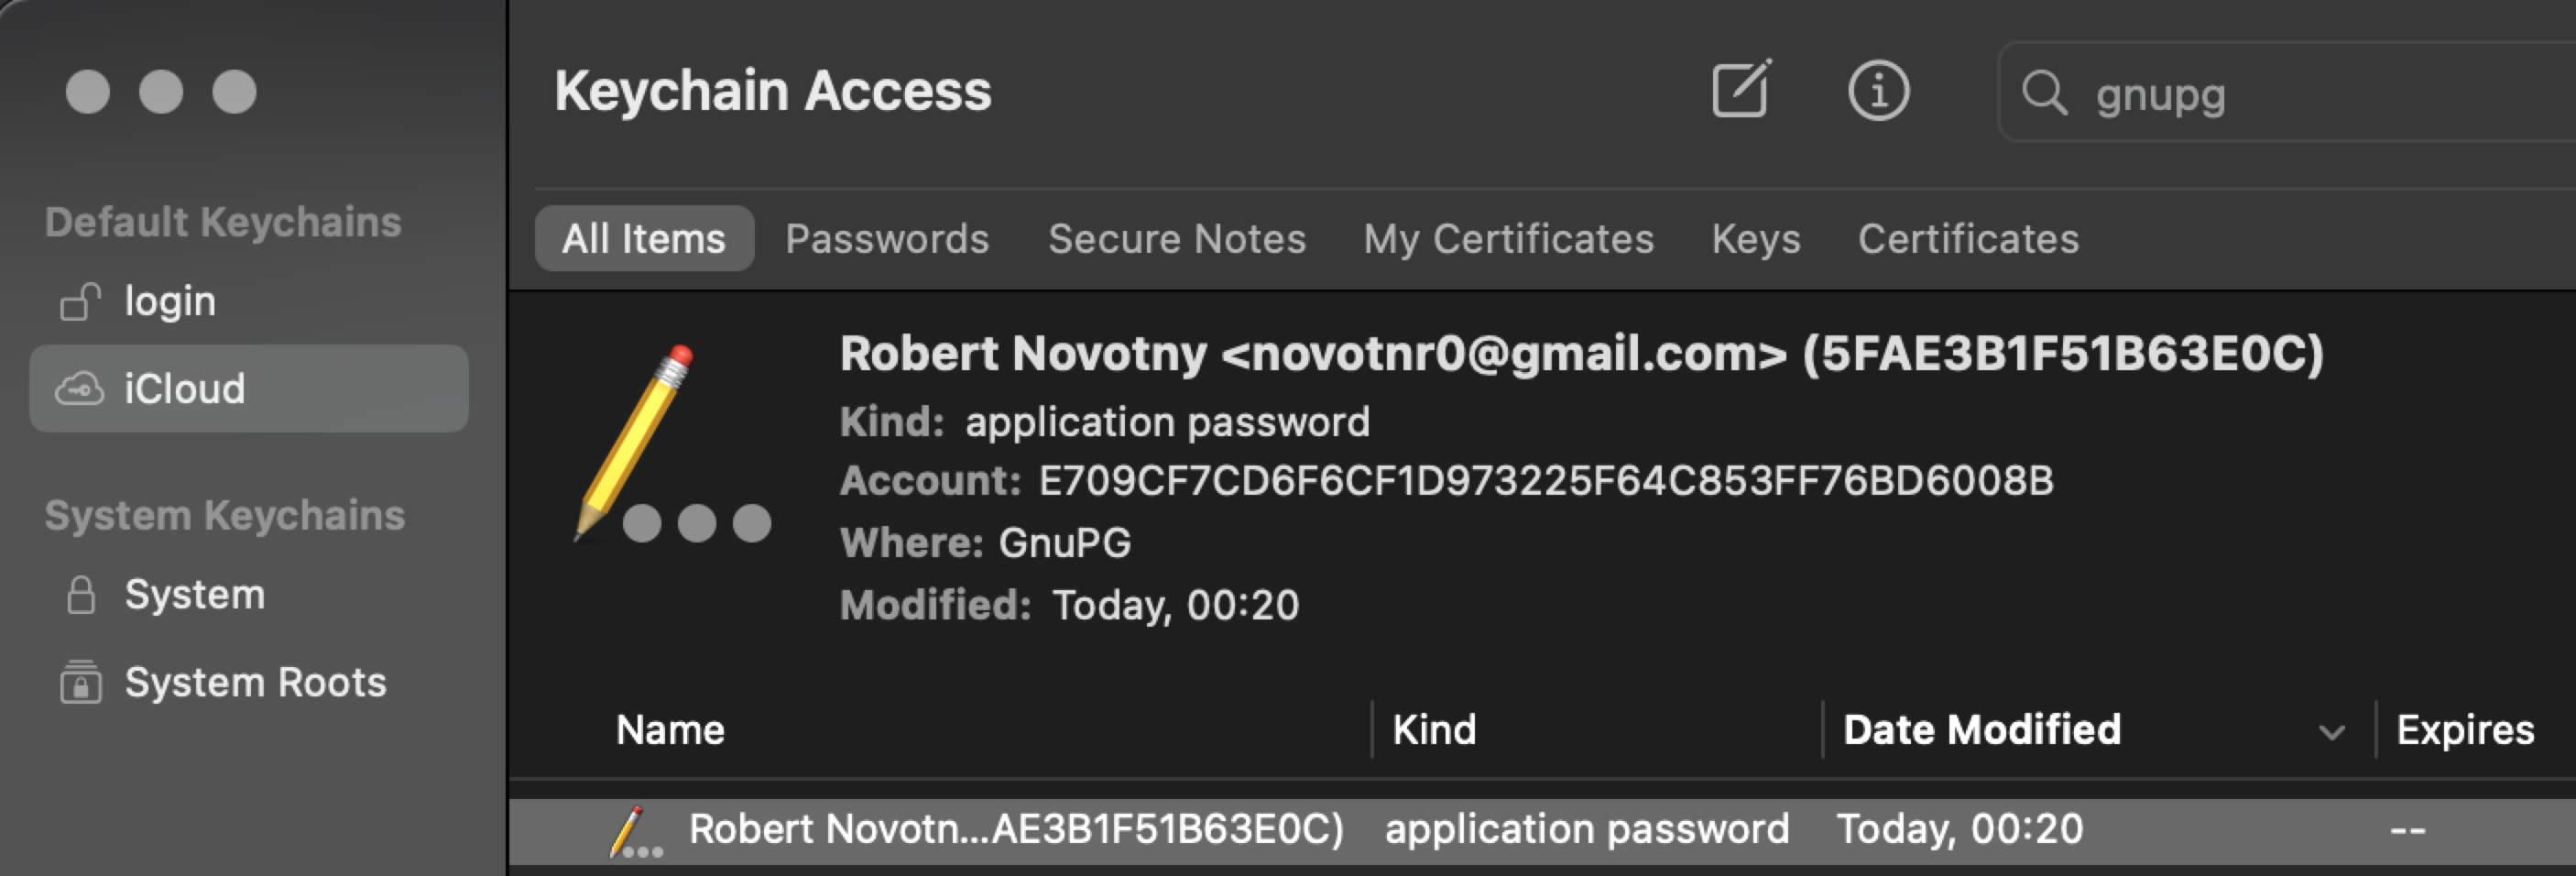 GnuPG v MacOS keychain